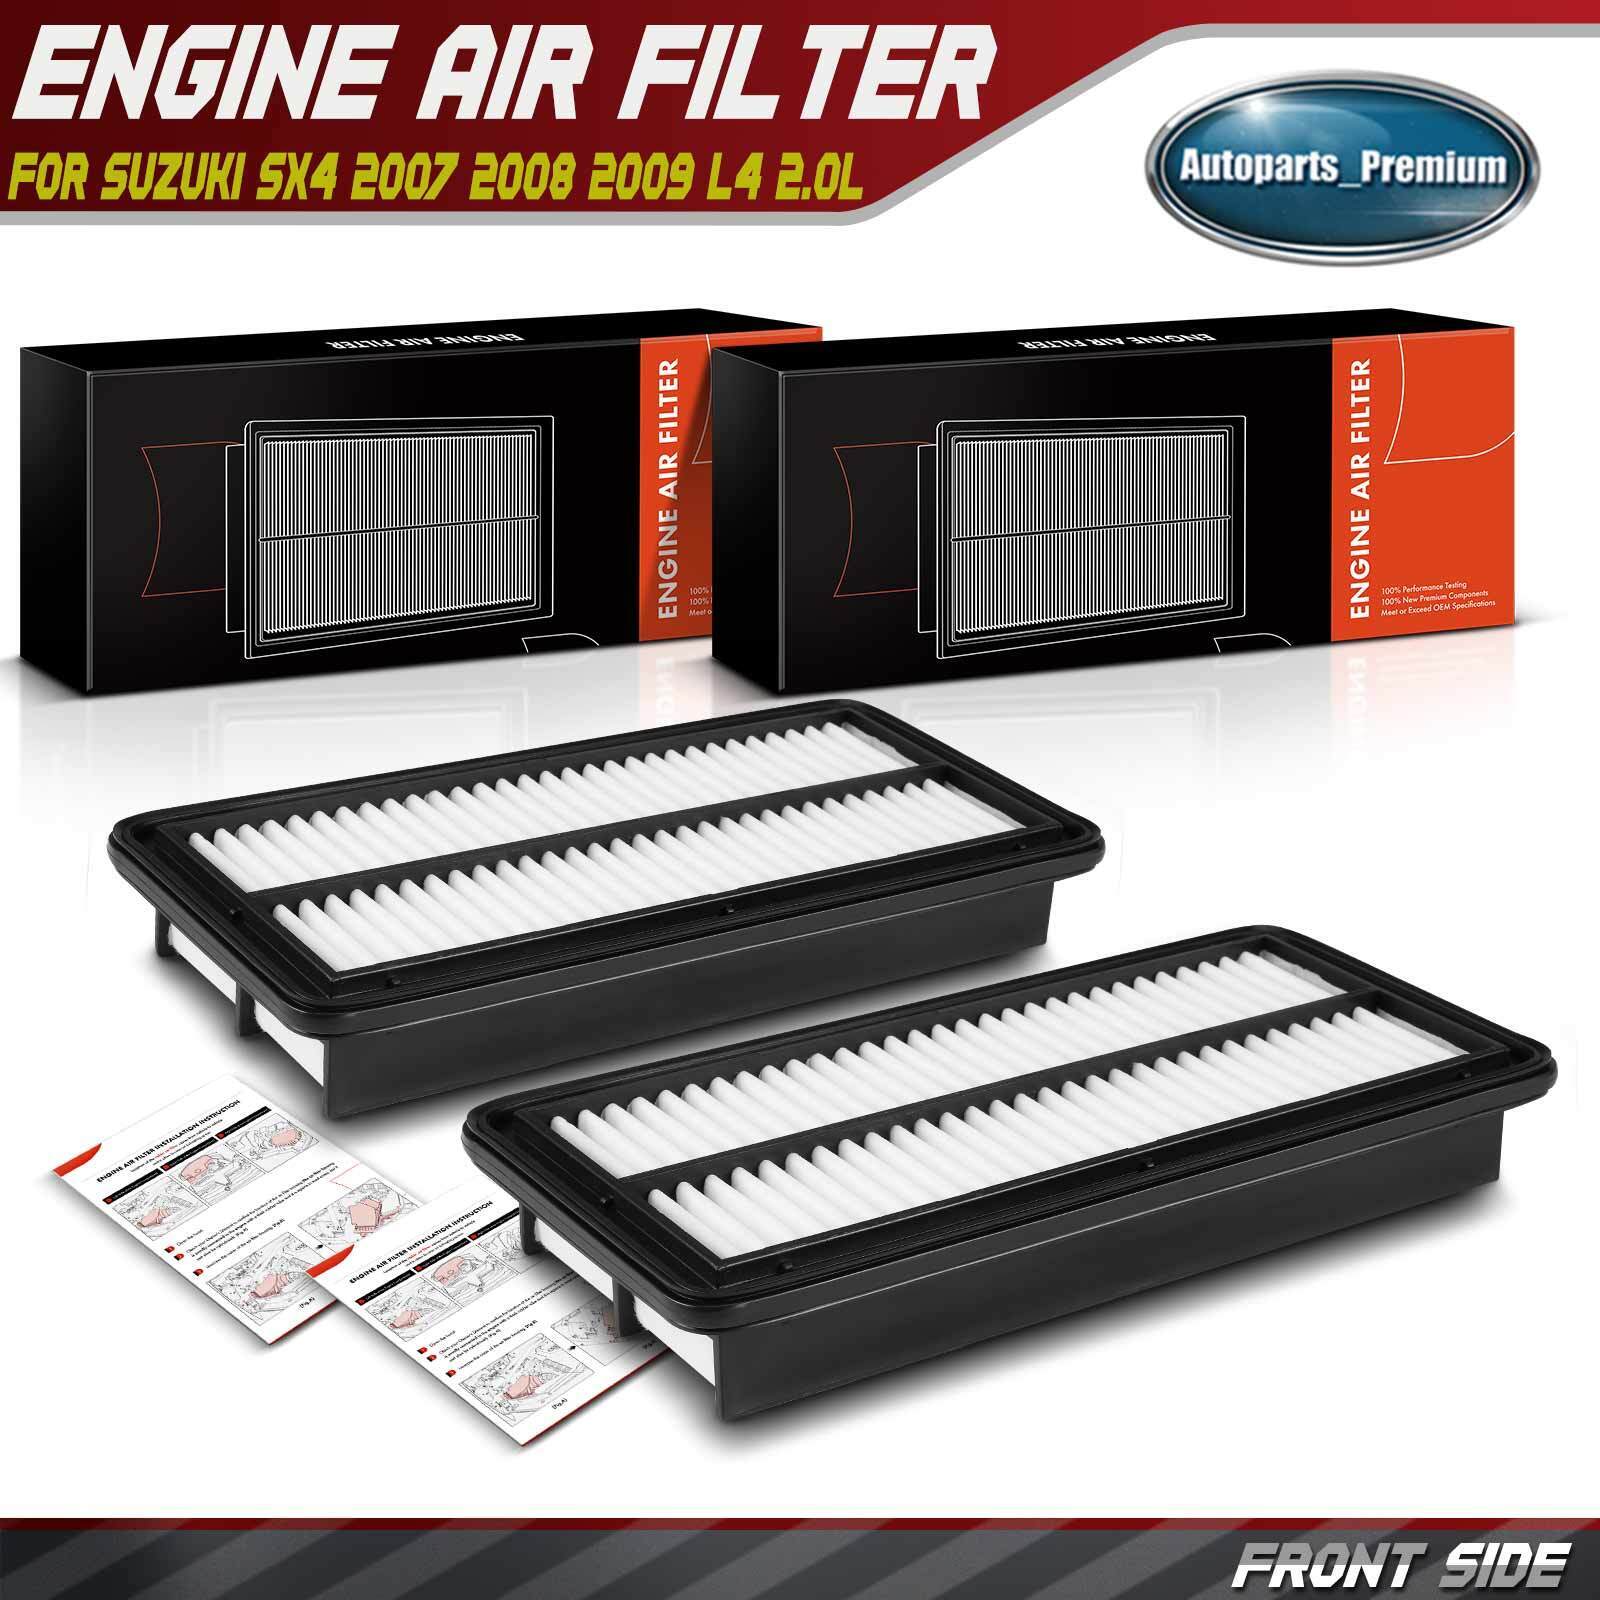 2x New Engine Air Filter for Suzuki SX4 2007 2008 2009 L4 2.0L 1378080J00 Rigid